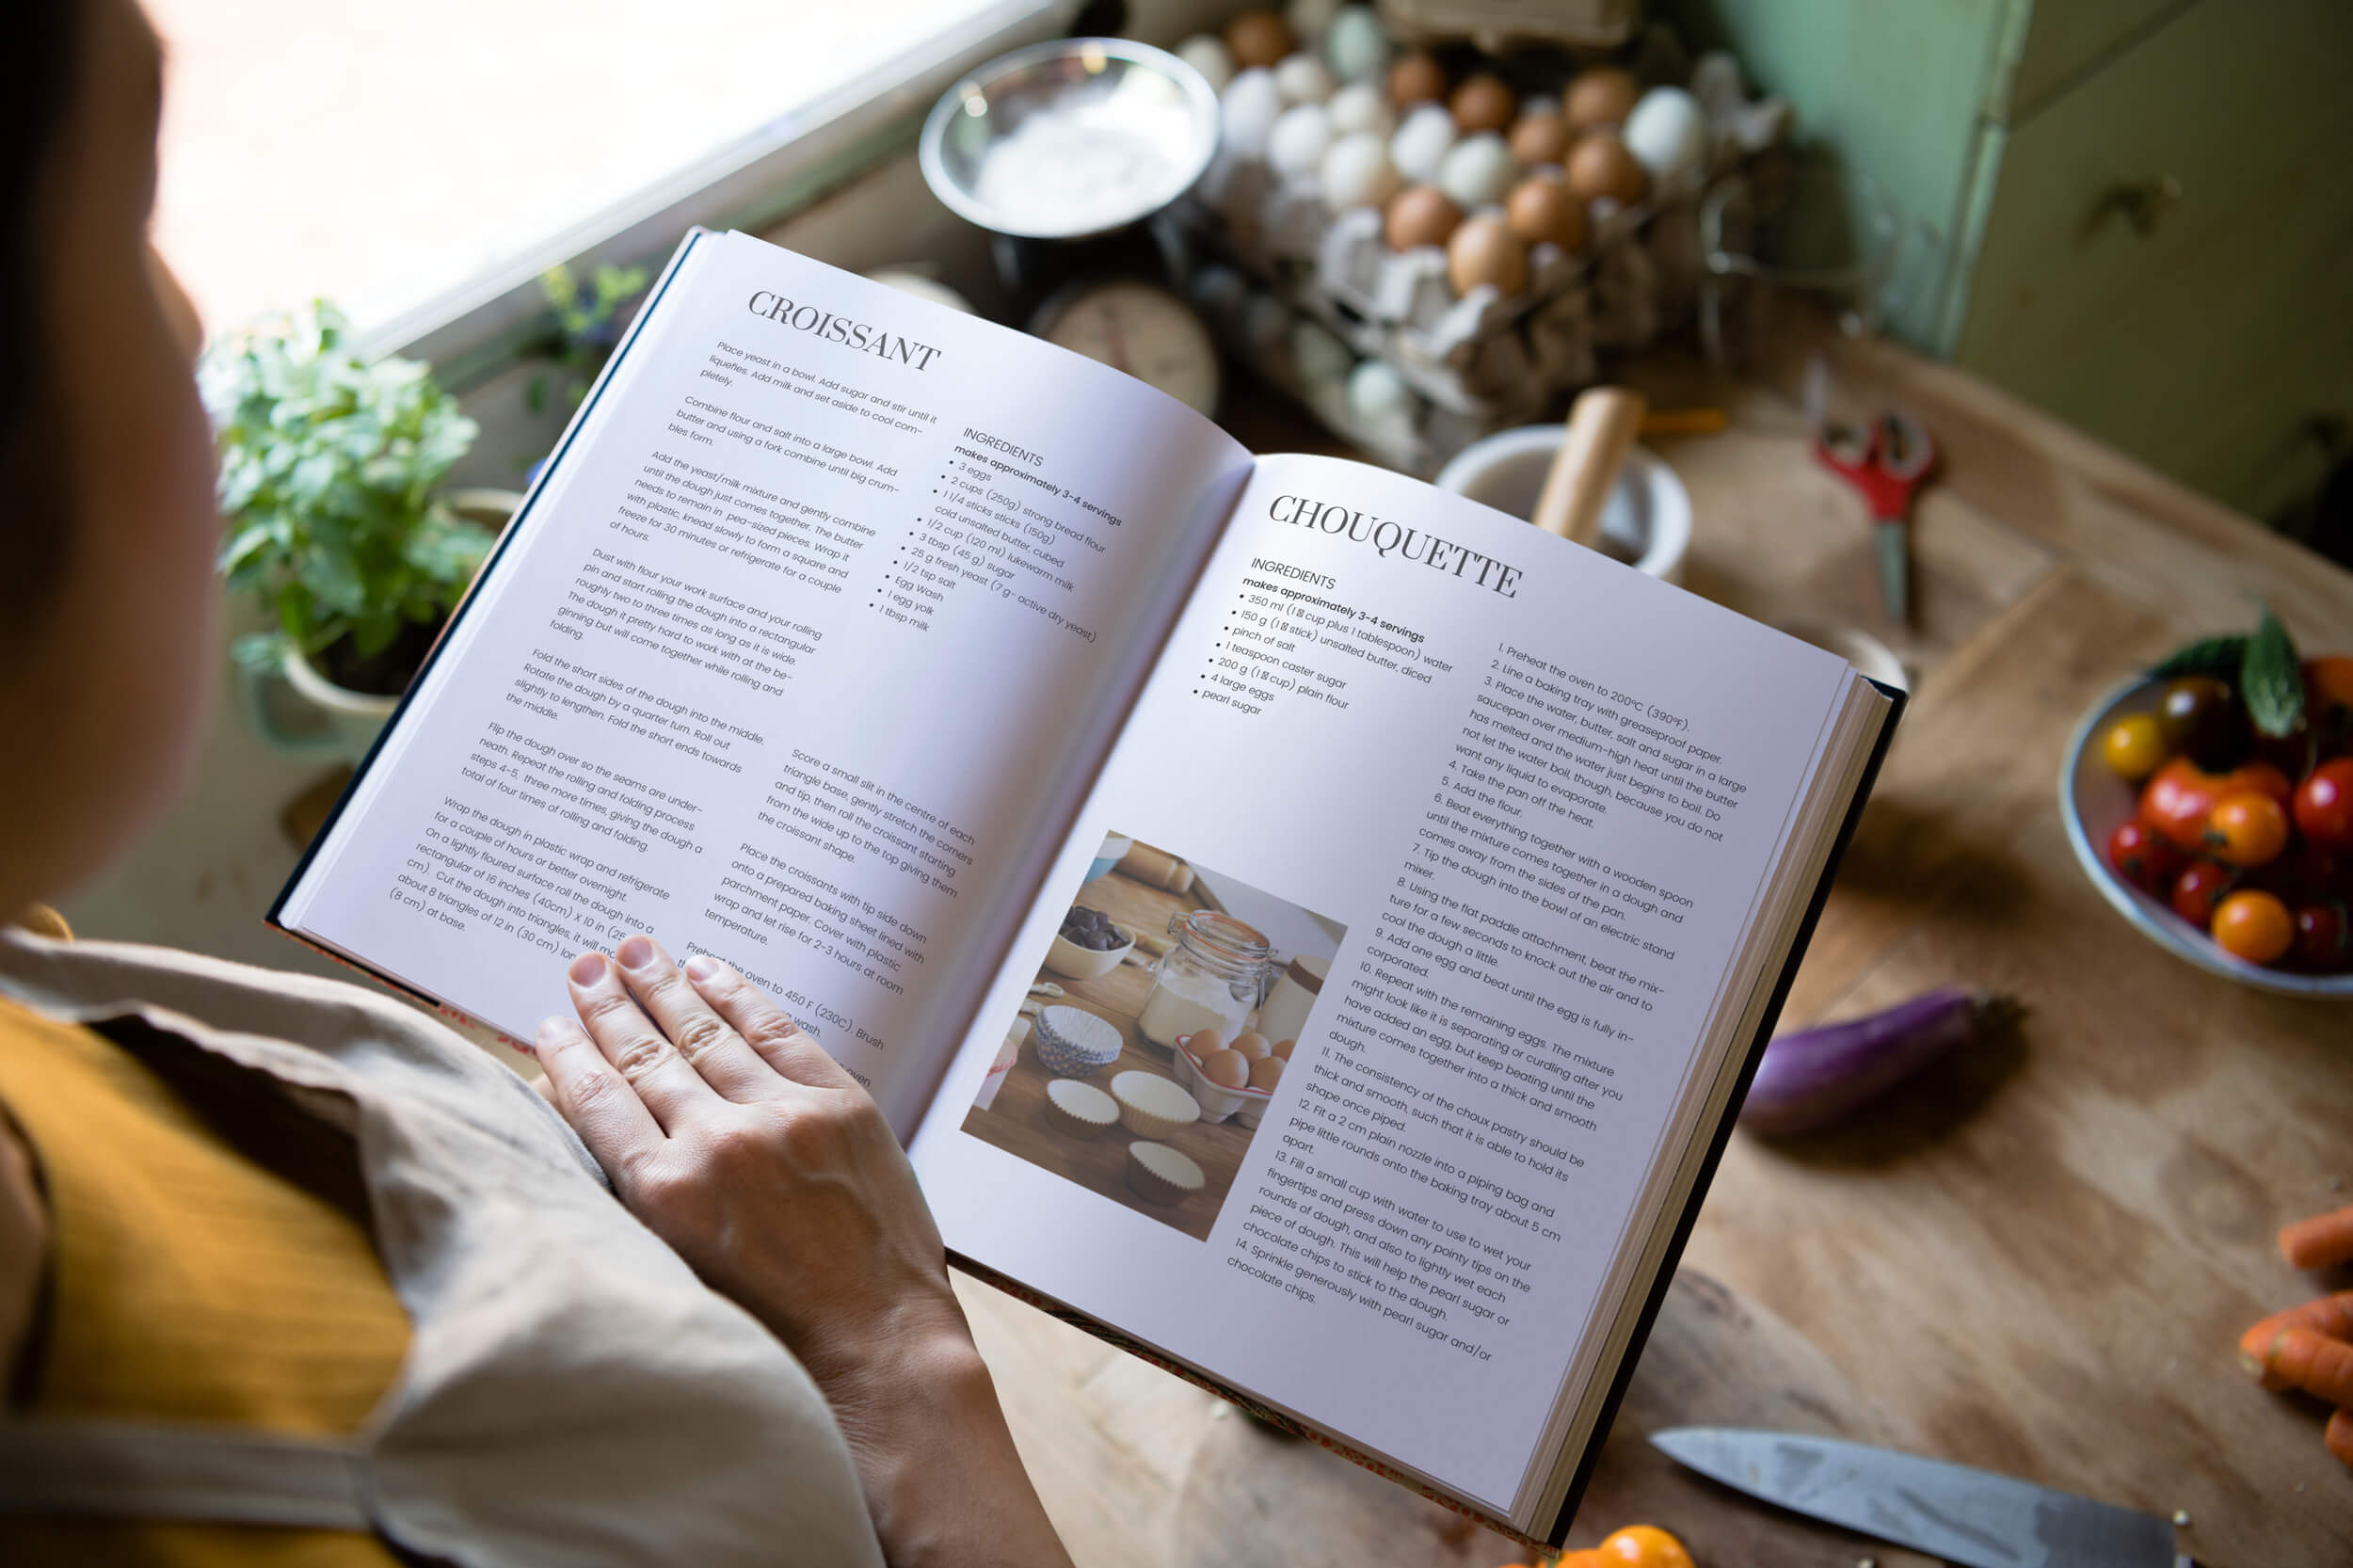 https://recipes.net/wp-content/uploads/2023/02/five-cookbook-design-ideas.jpg